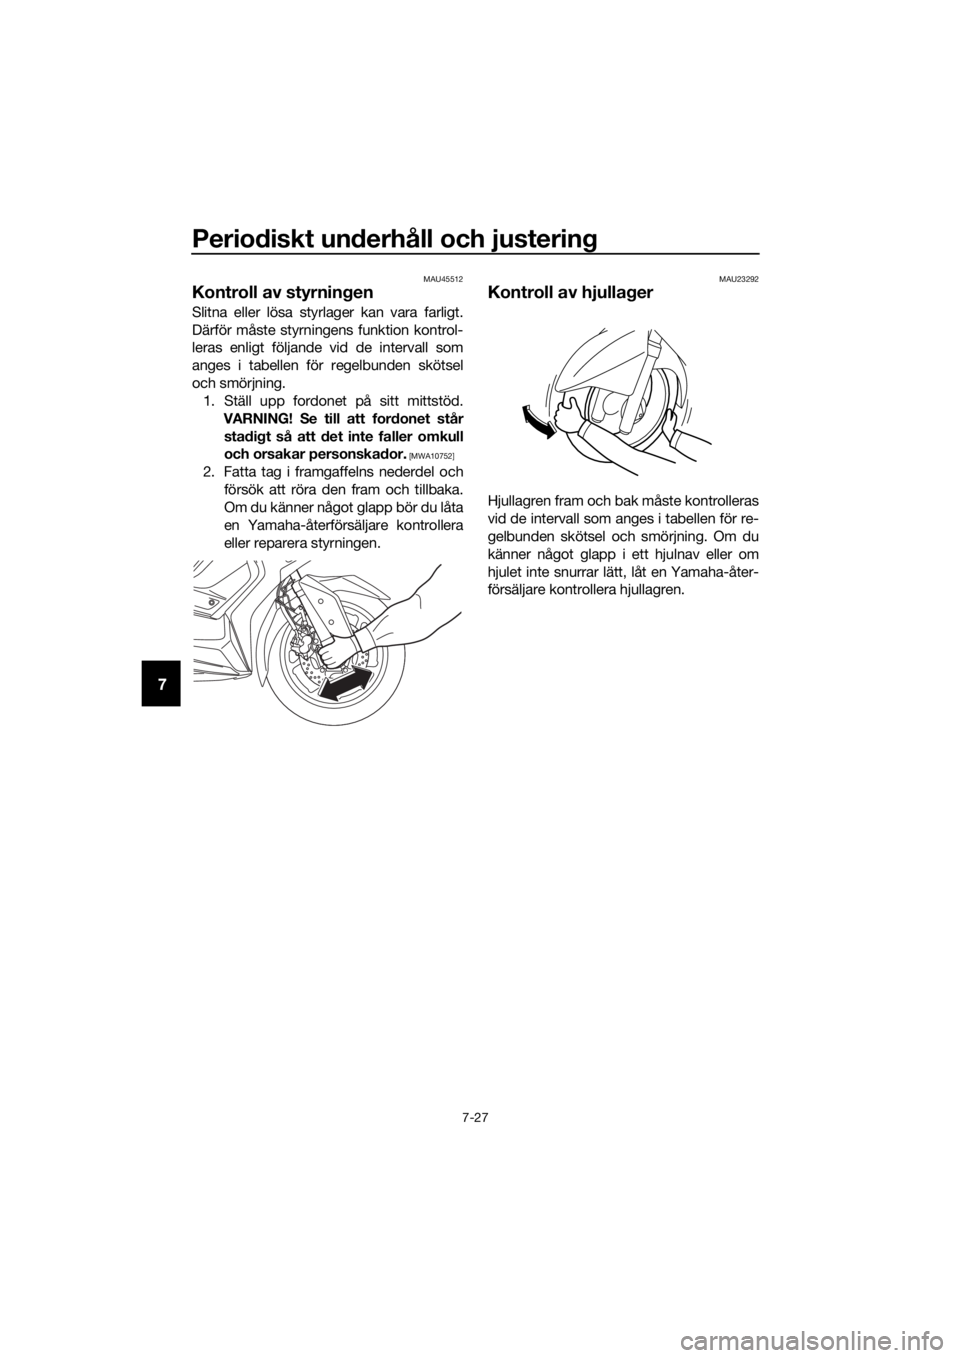 YAMAHA XMAX 400 2018  Bruksanvisningar (in Swedish) Periodiskt underhåll och justering
7-27
7
MAU45512
Kontroll av styrningen
Slitna eller lösa styrlager kan vara farligt.
Därför måste styrningens funktion kontrol-
leras enligt följande vid de in